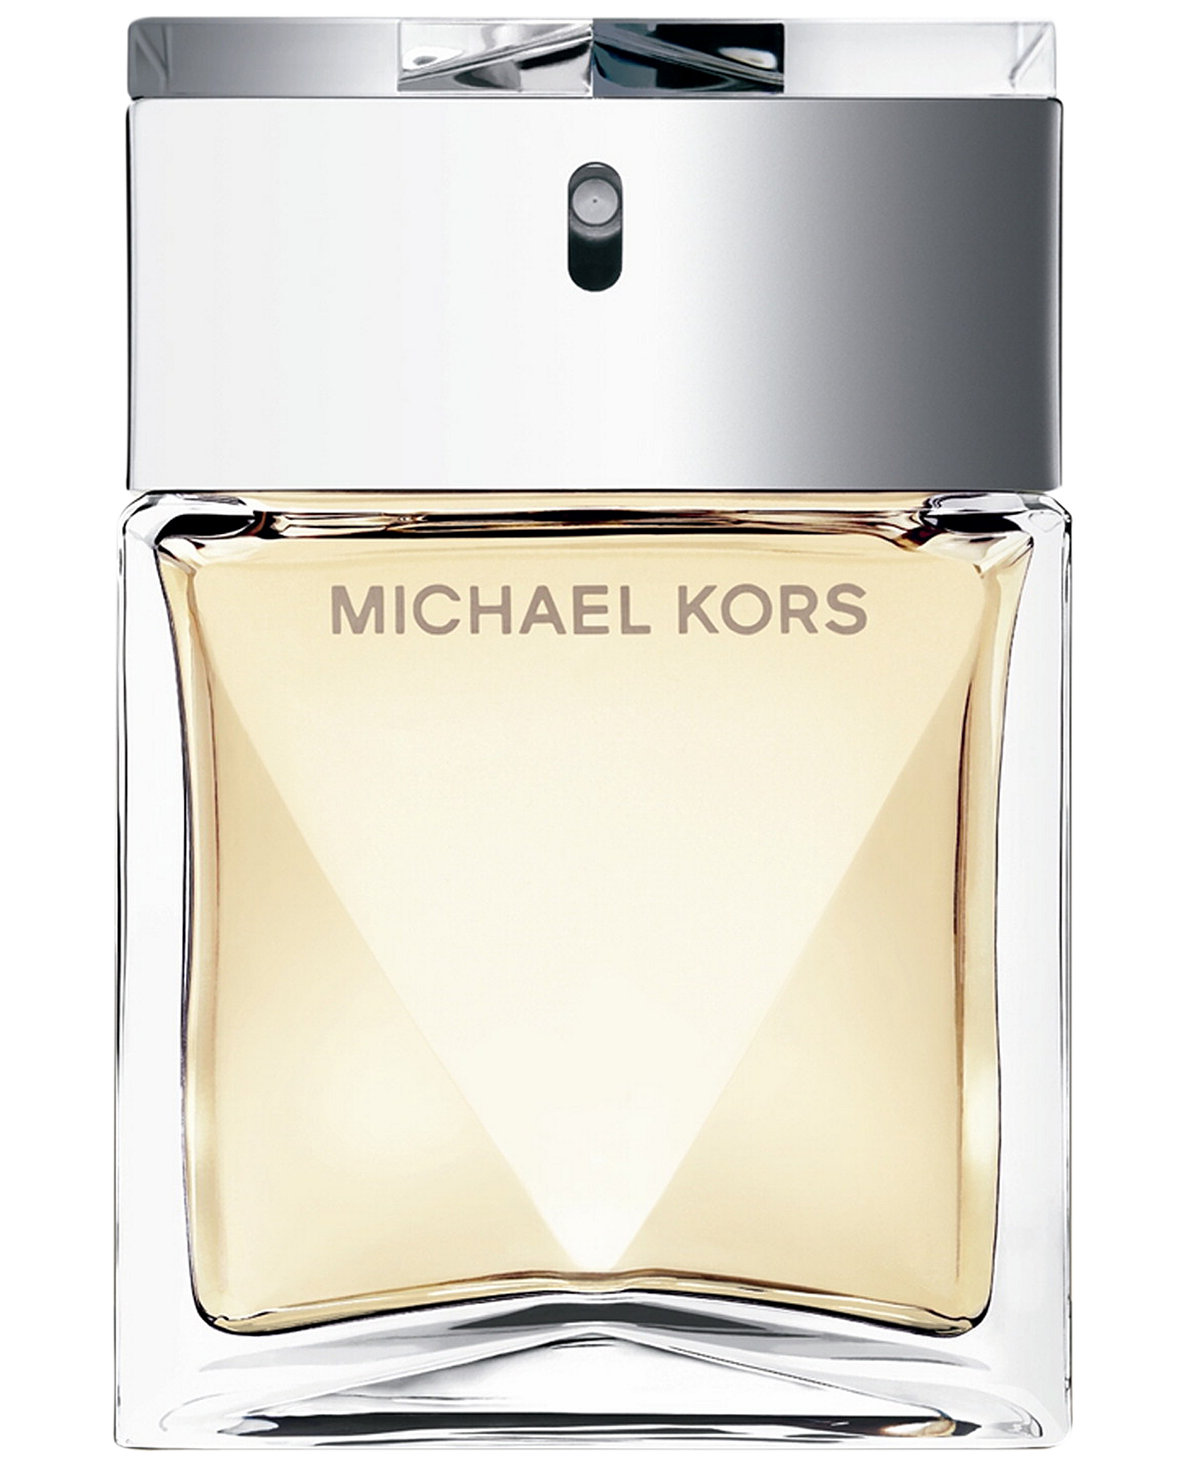 MICHAEL KORS for Women - Perfume Oils | Handbags |Fragrances | Scarves